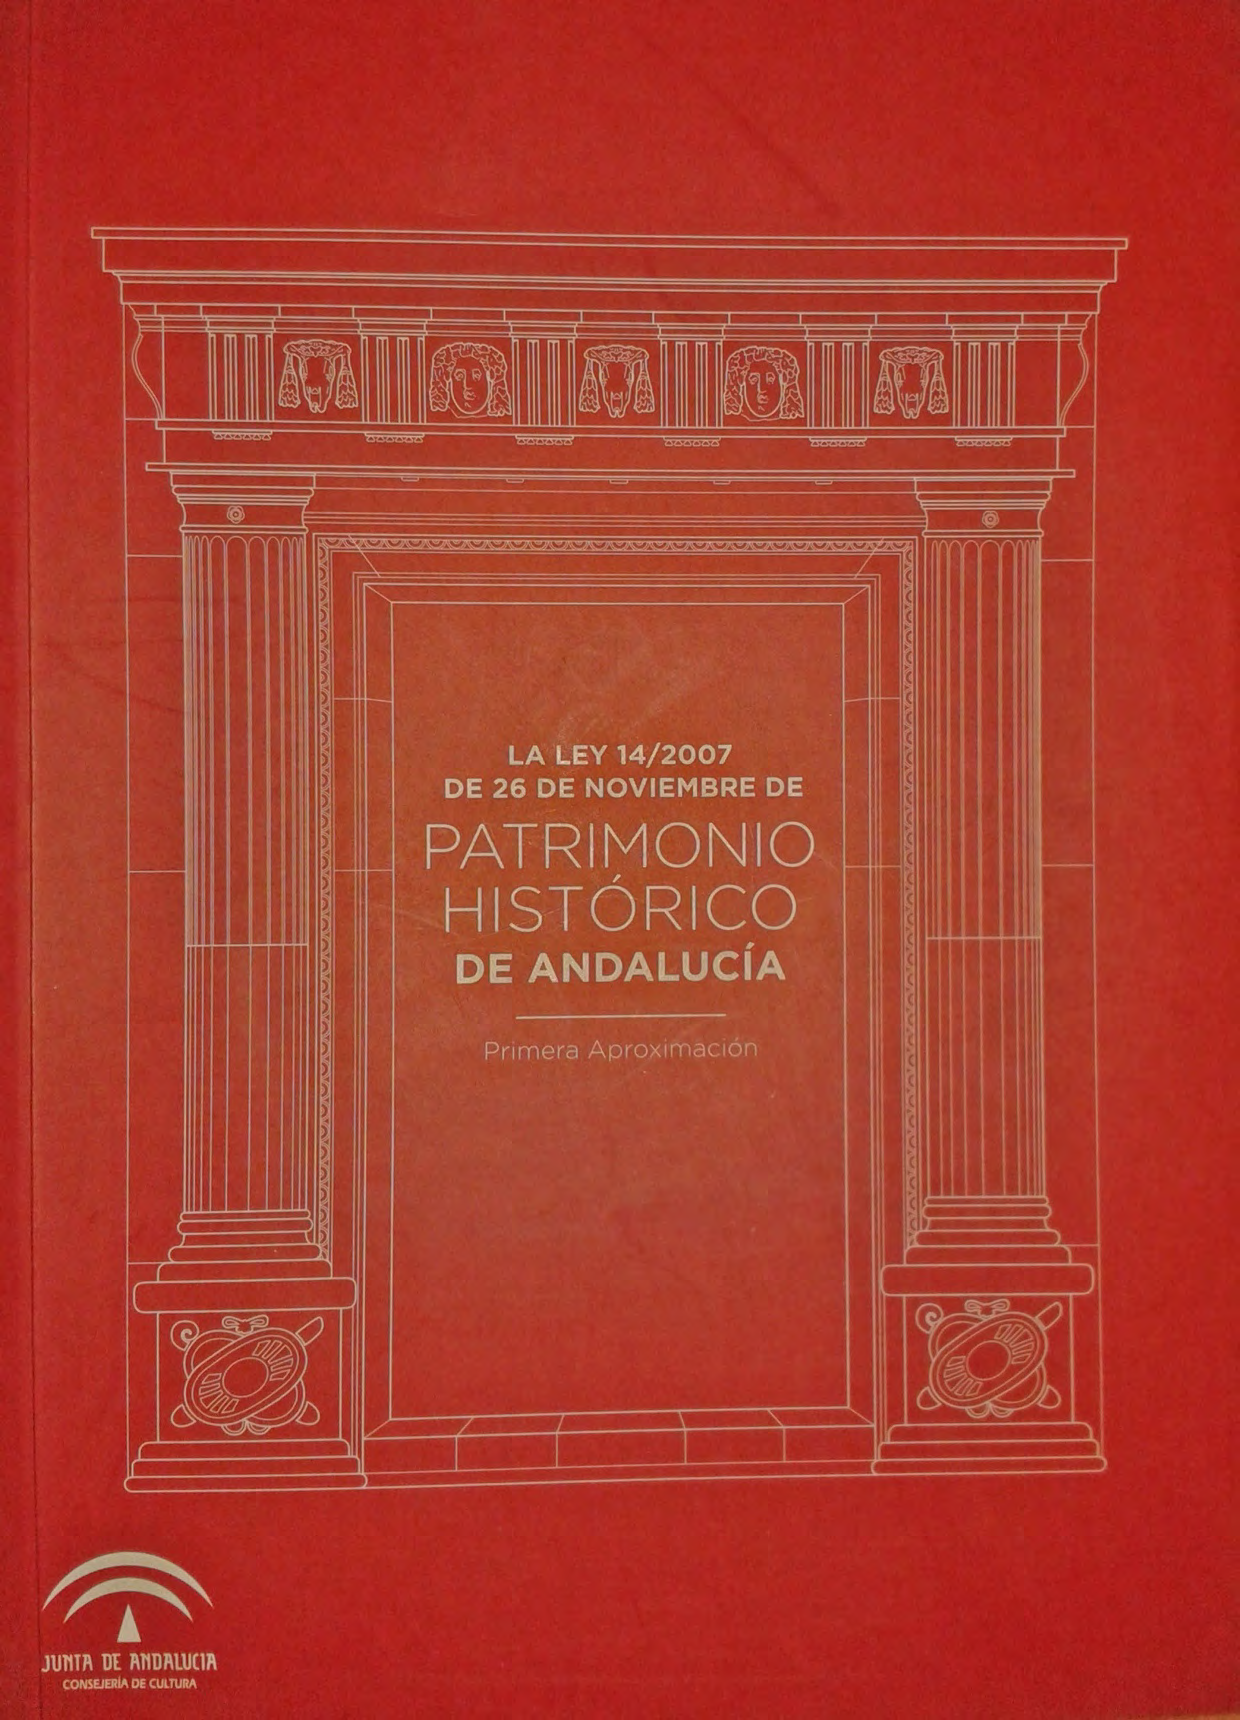 Ley 14/2007 de 26 de Noviembre de Patrimonio Histórico de Andalucía, Artículo II: (.